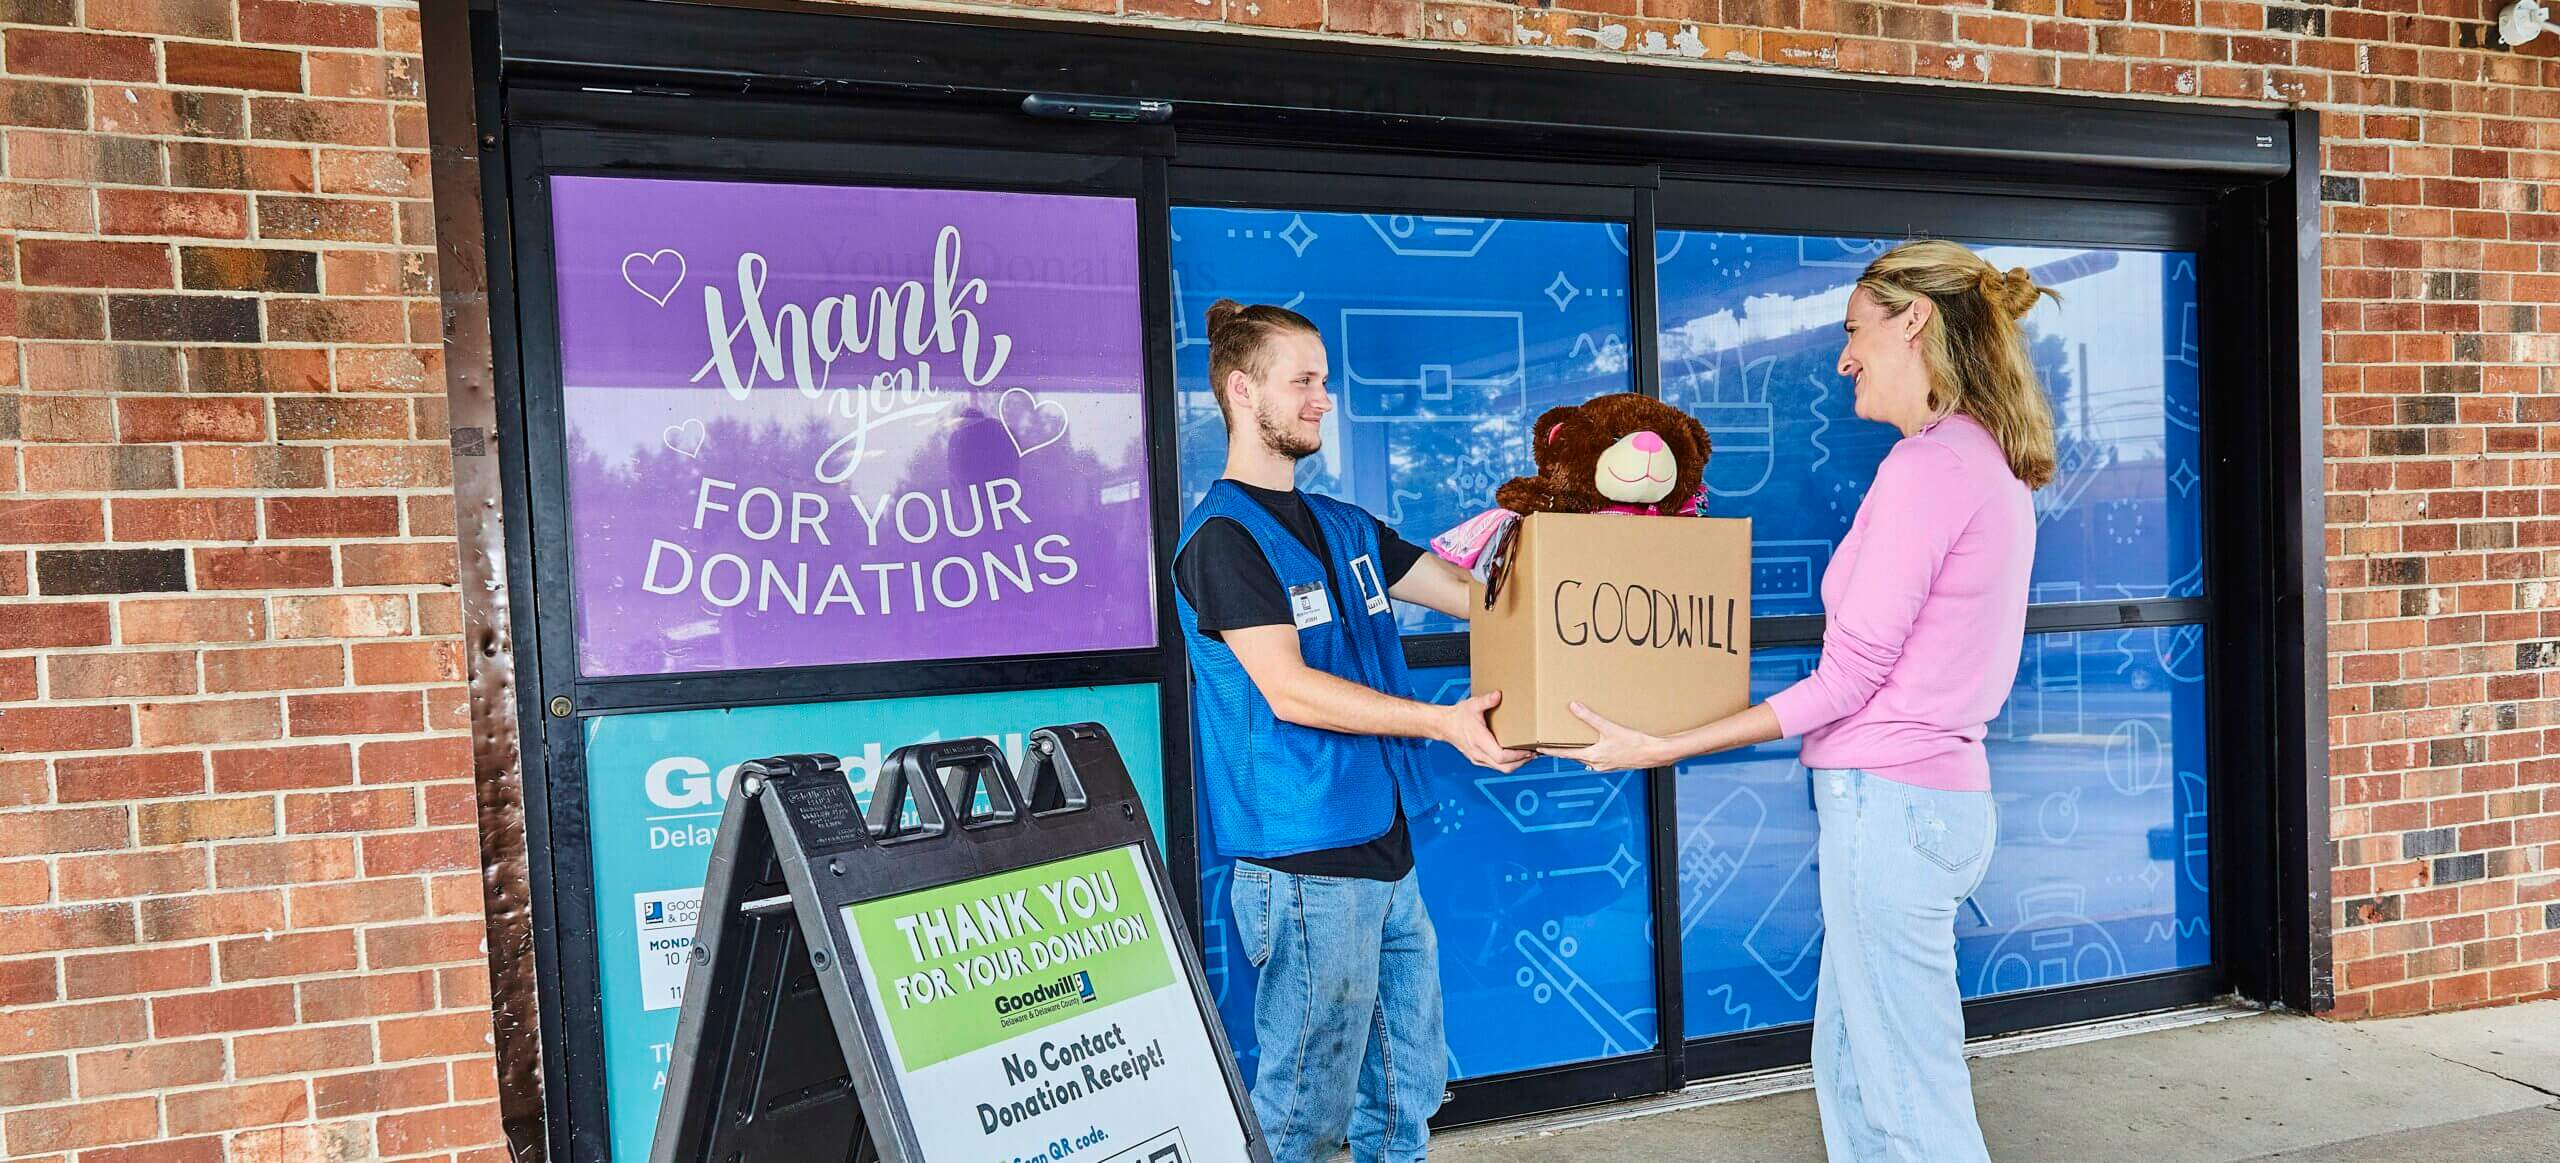 5 Reasons to Donate & Shop at Goodwill This Holiday Season